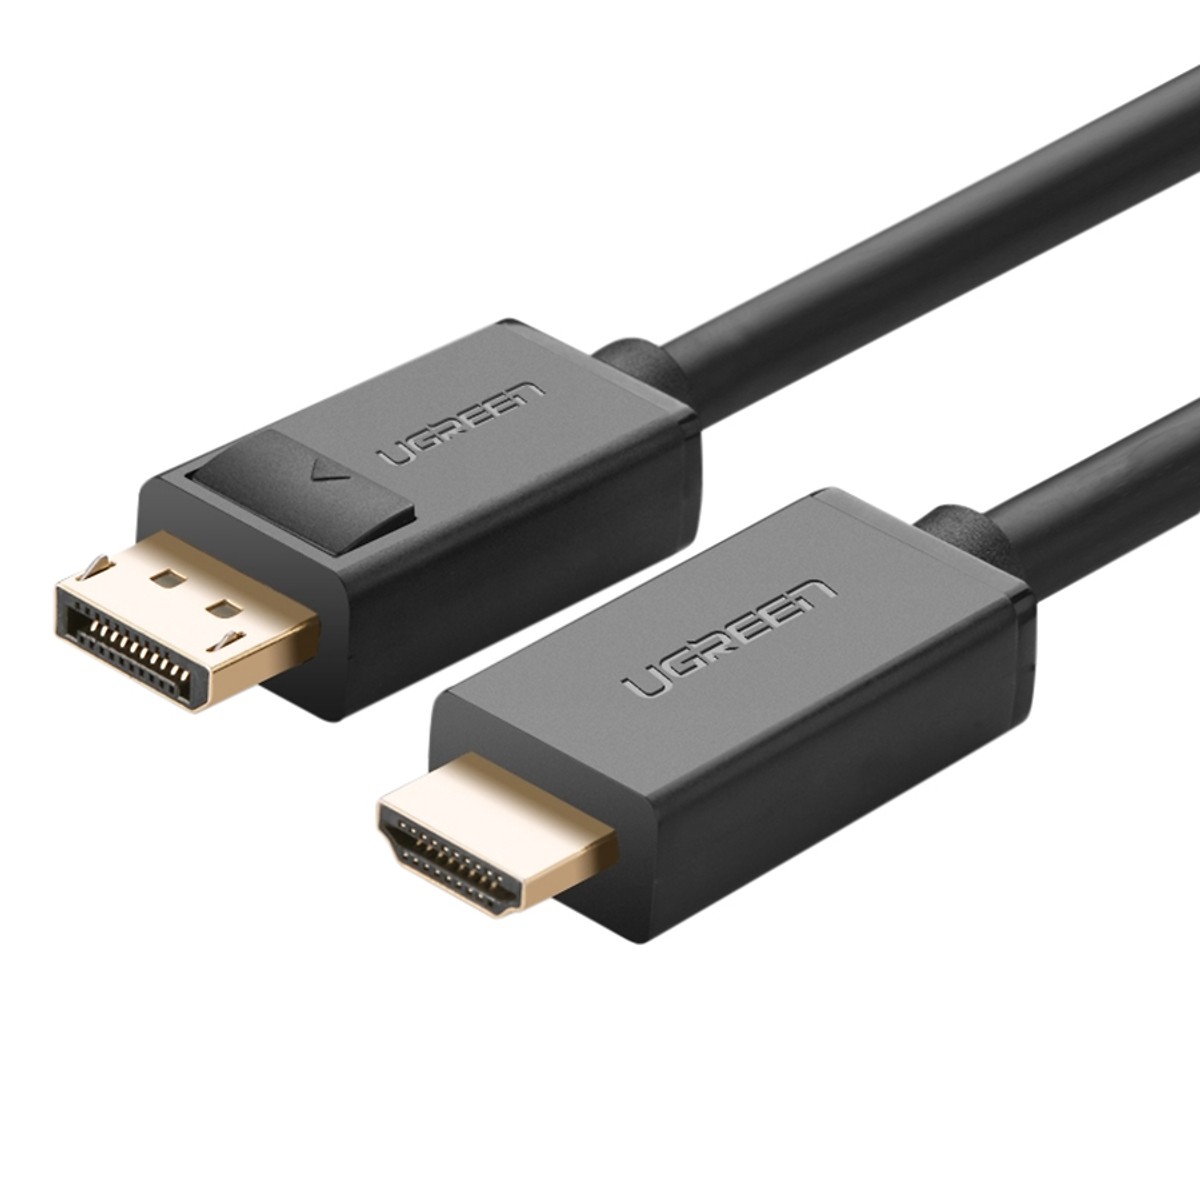 Cáp Chuyển Đổi DisPlayport sang HDMI cao cấp Ugreen dài 2m - Hàng chính hãng